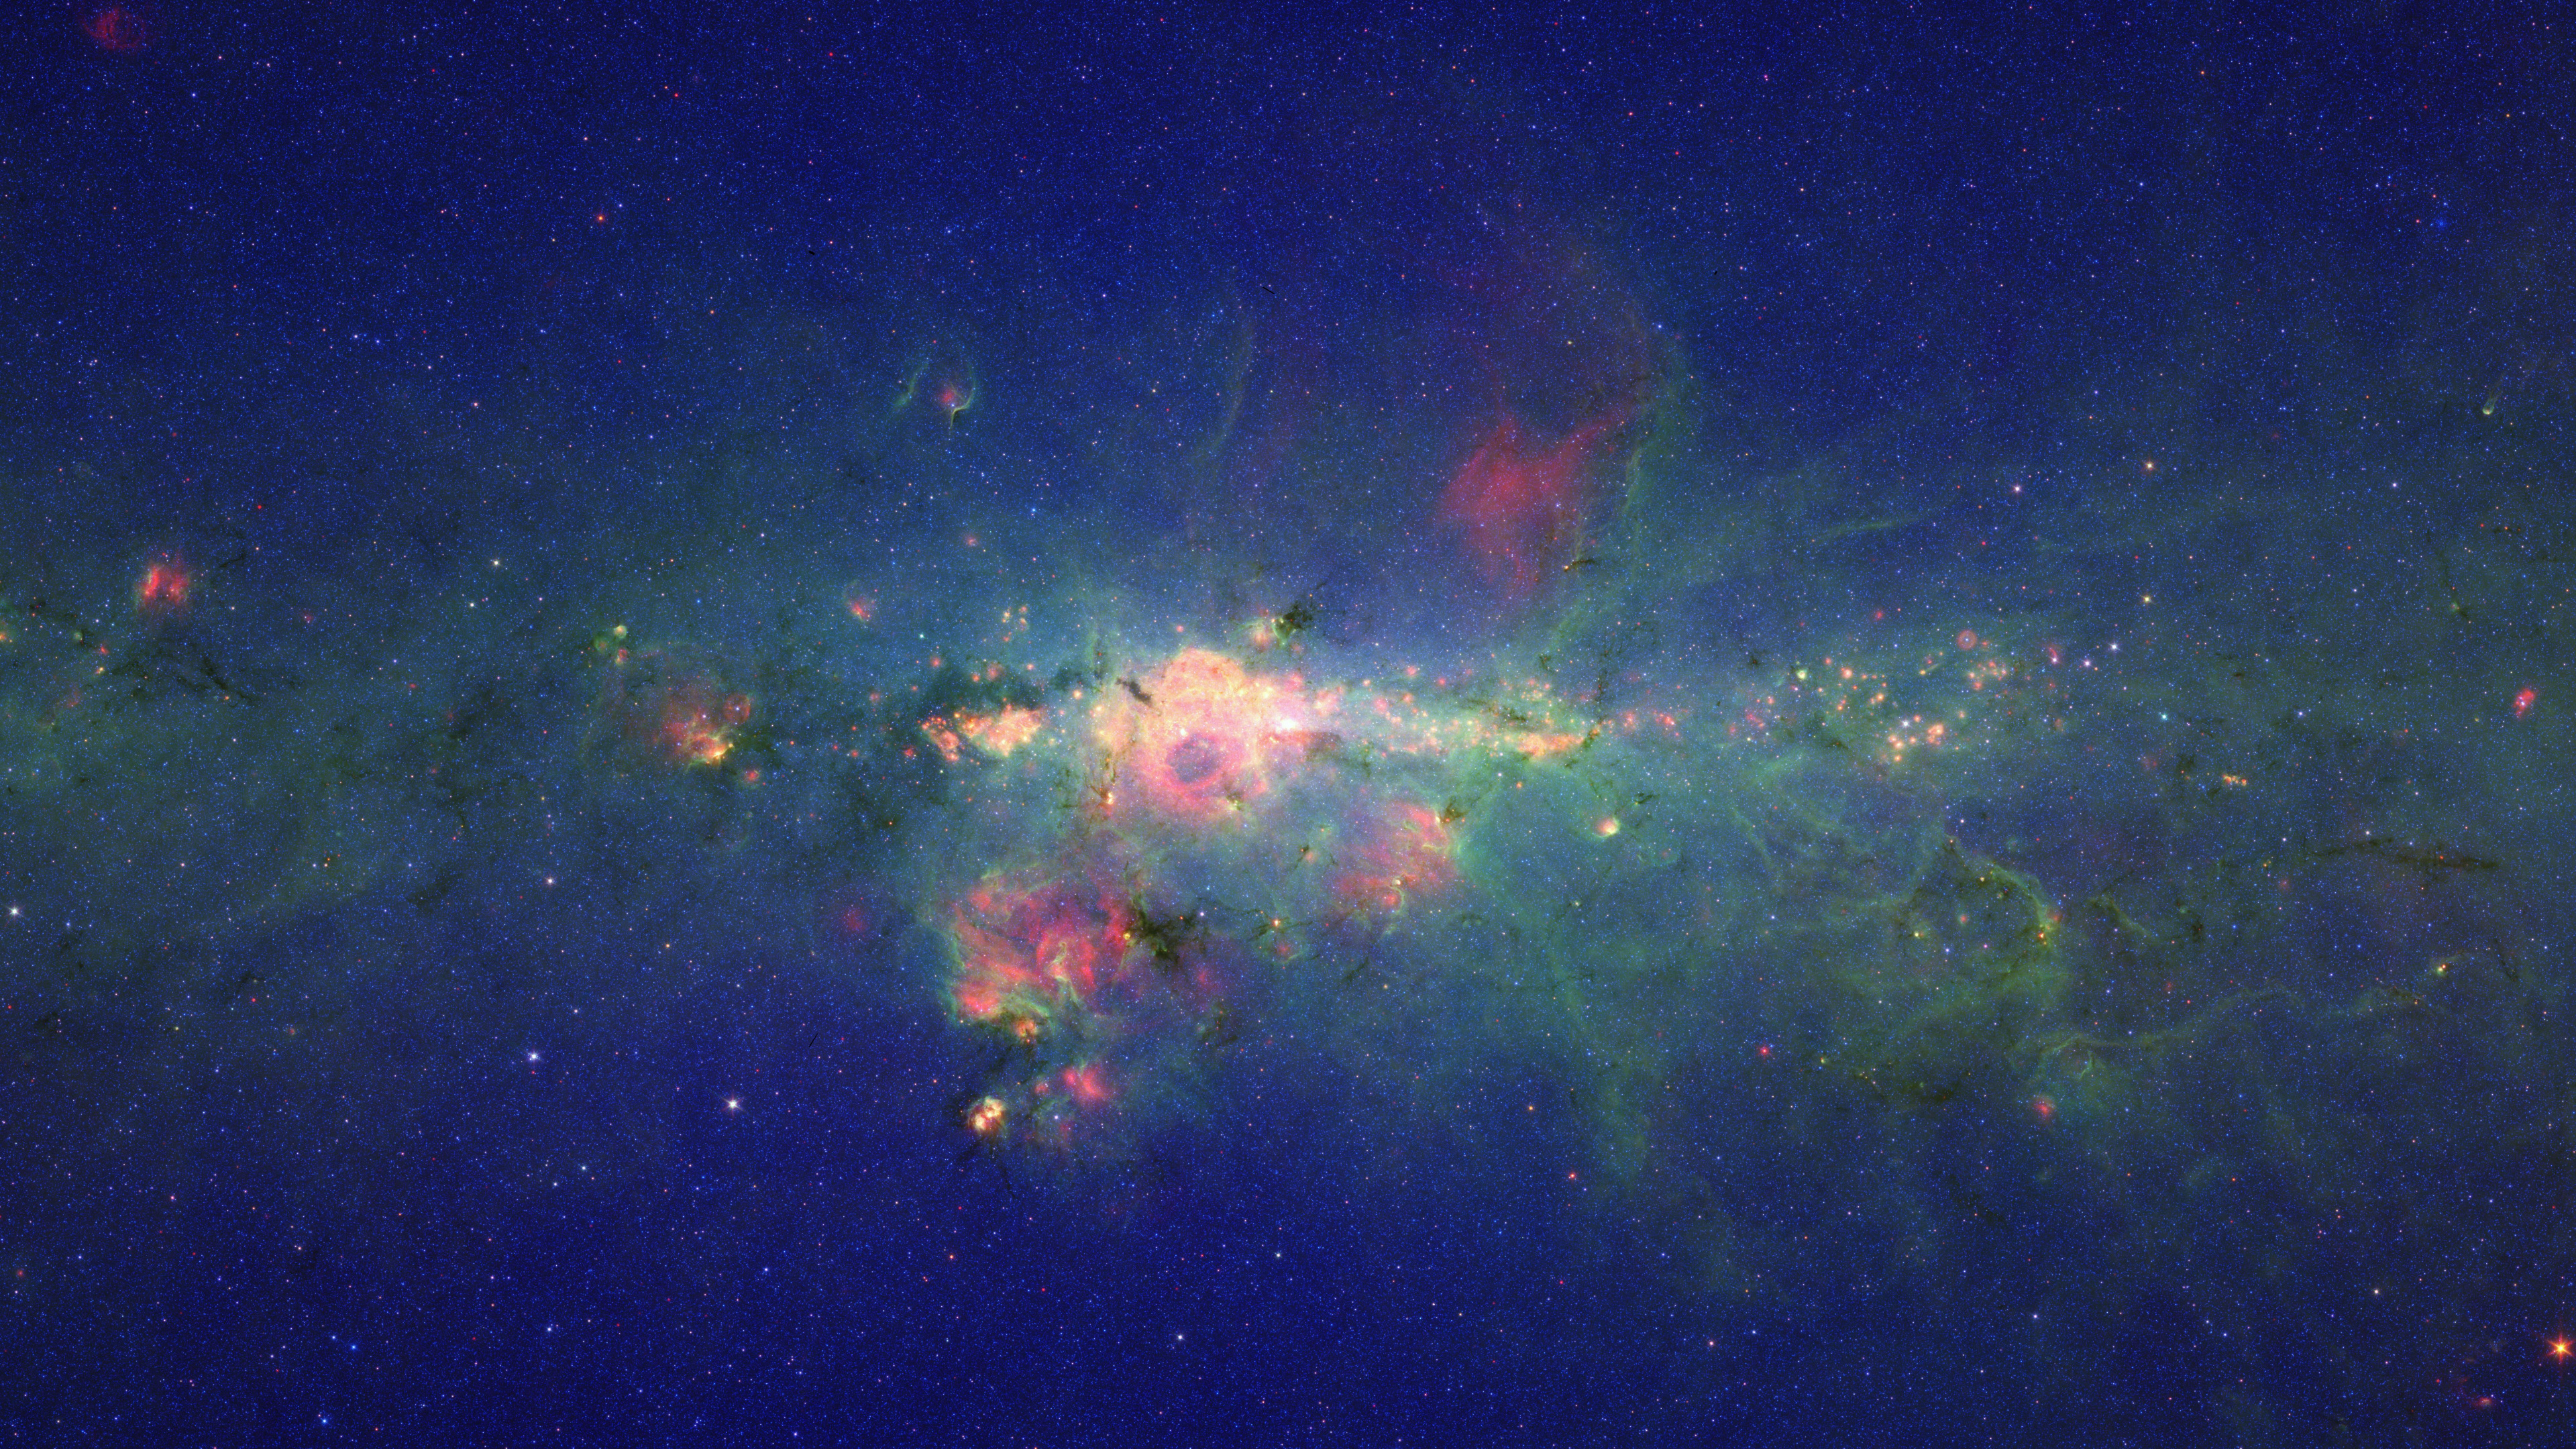 银河系, 斯皮策太空望远镜, 明星, 气氛, 天文学对象 壁纸 3840x2160 允许